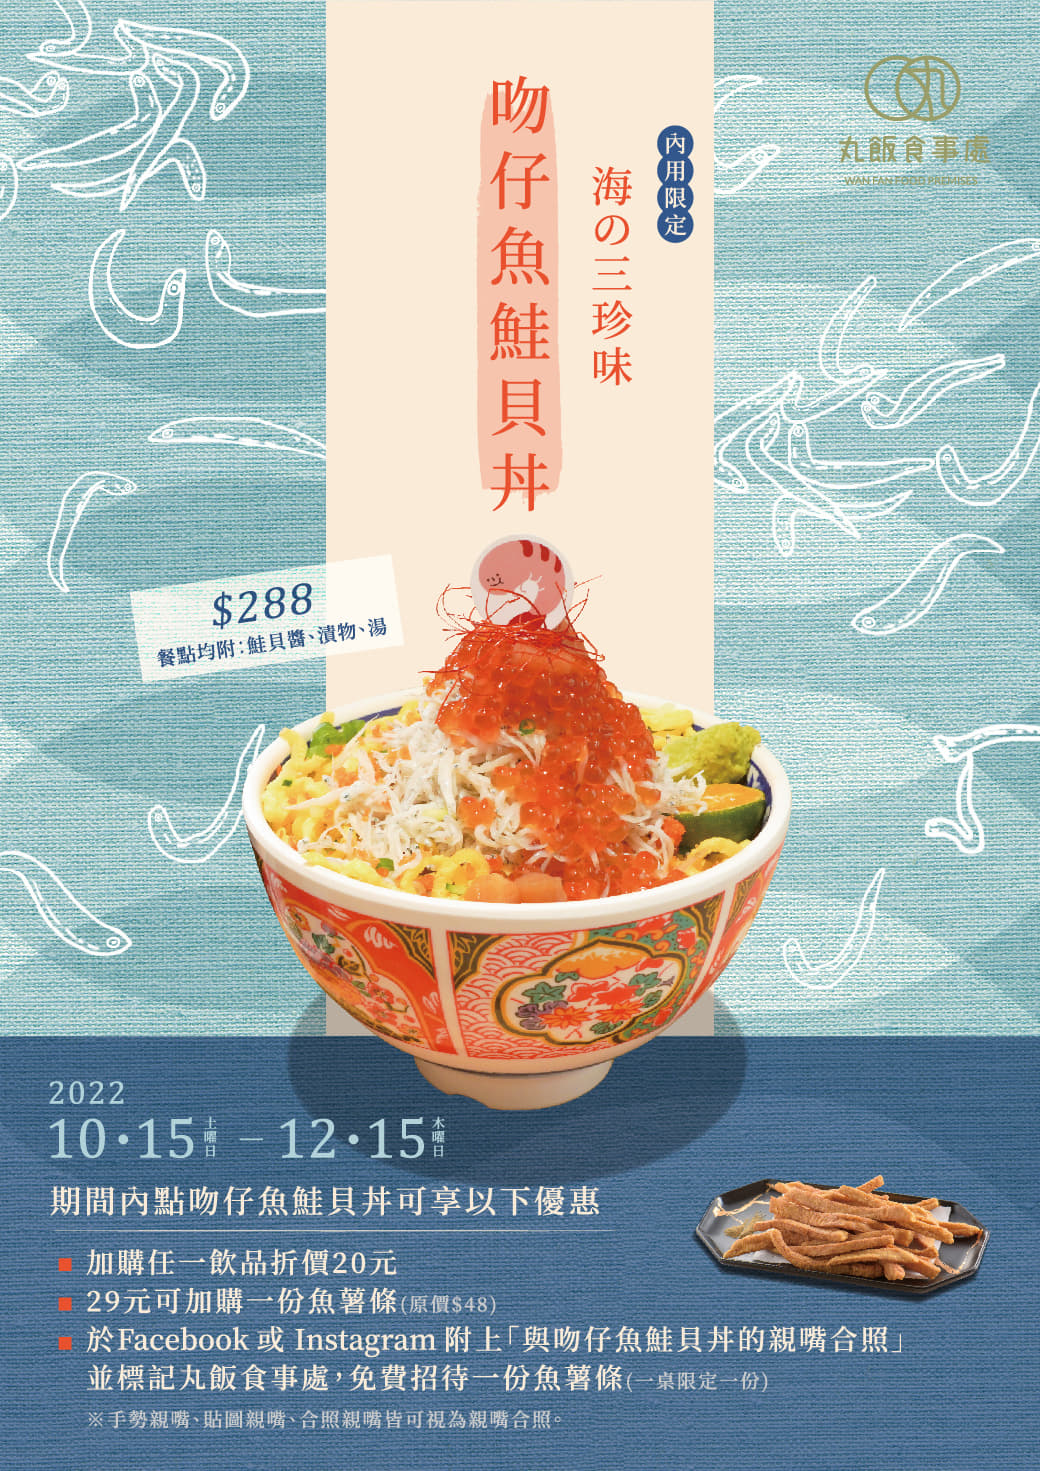 丸飯食事處，好狂！！吻仔魚鮭貝丼只要288元，超值鮮美新菜色 期間限定強力推出~ @緹雅瑪 美食旅遊趣